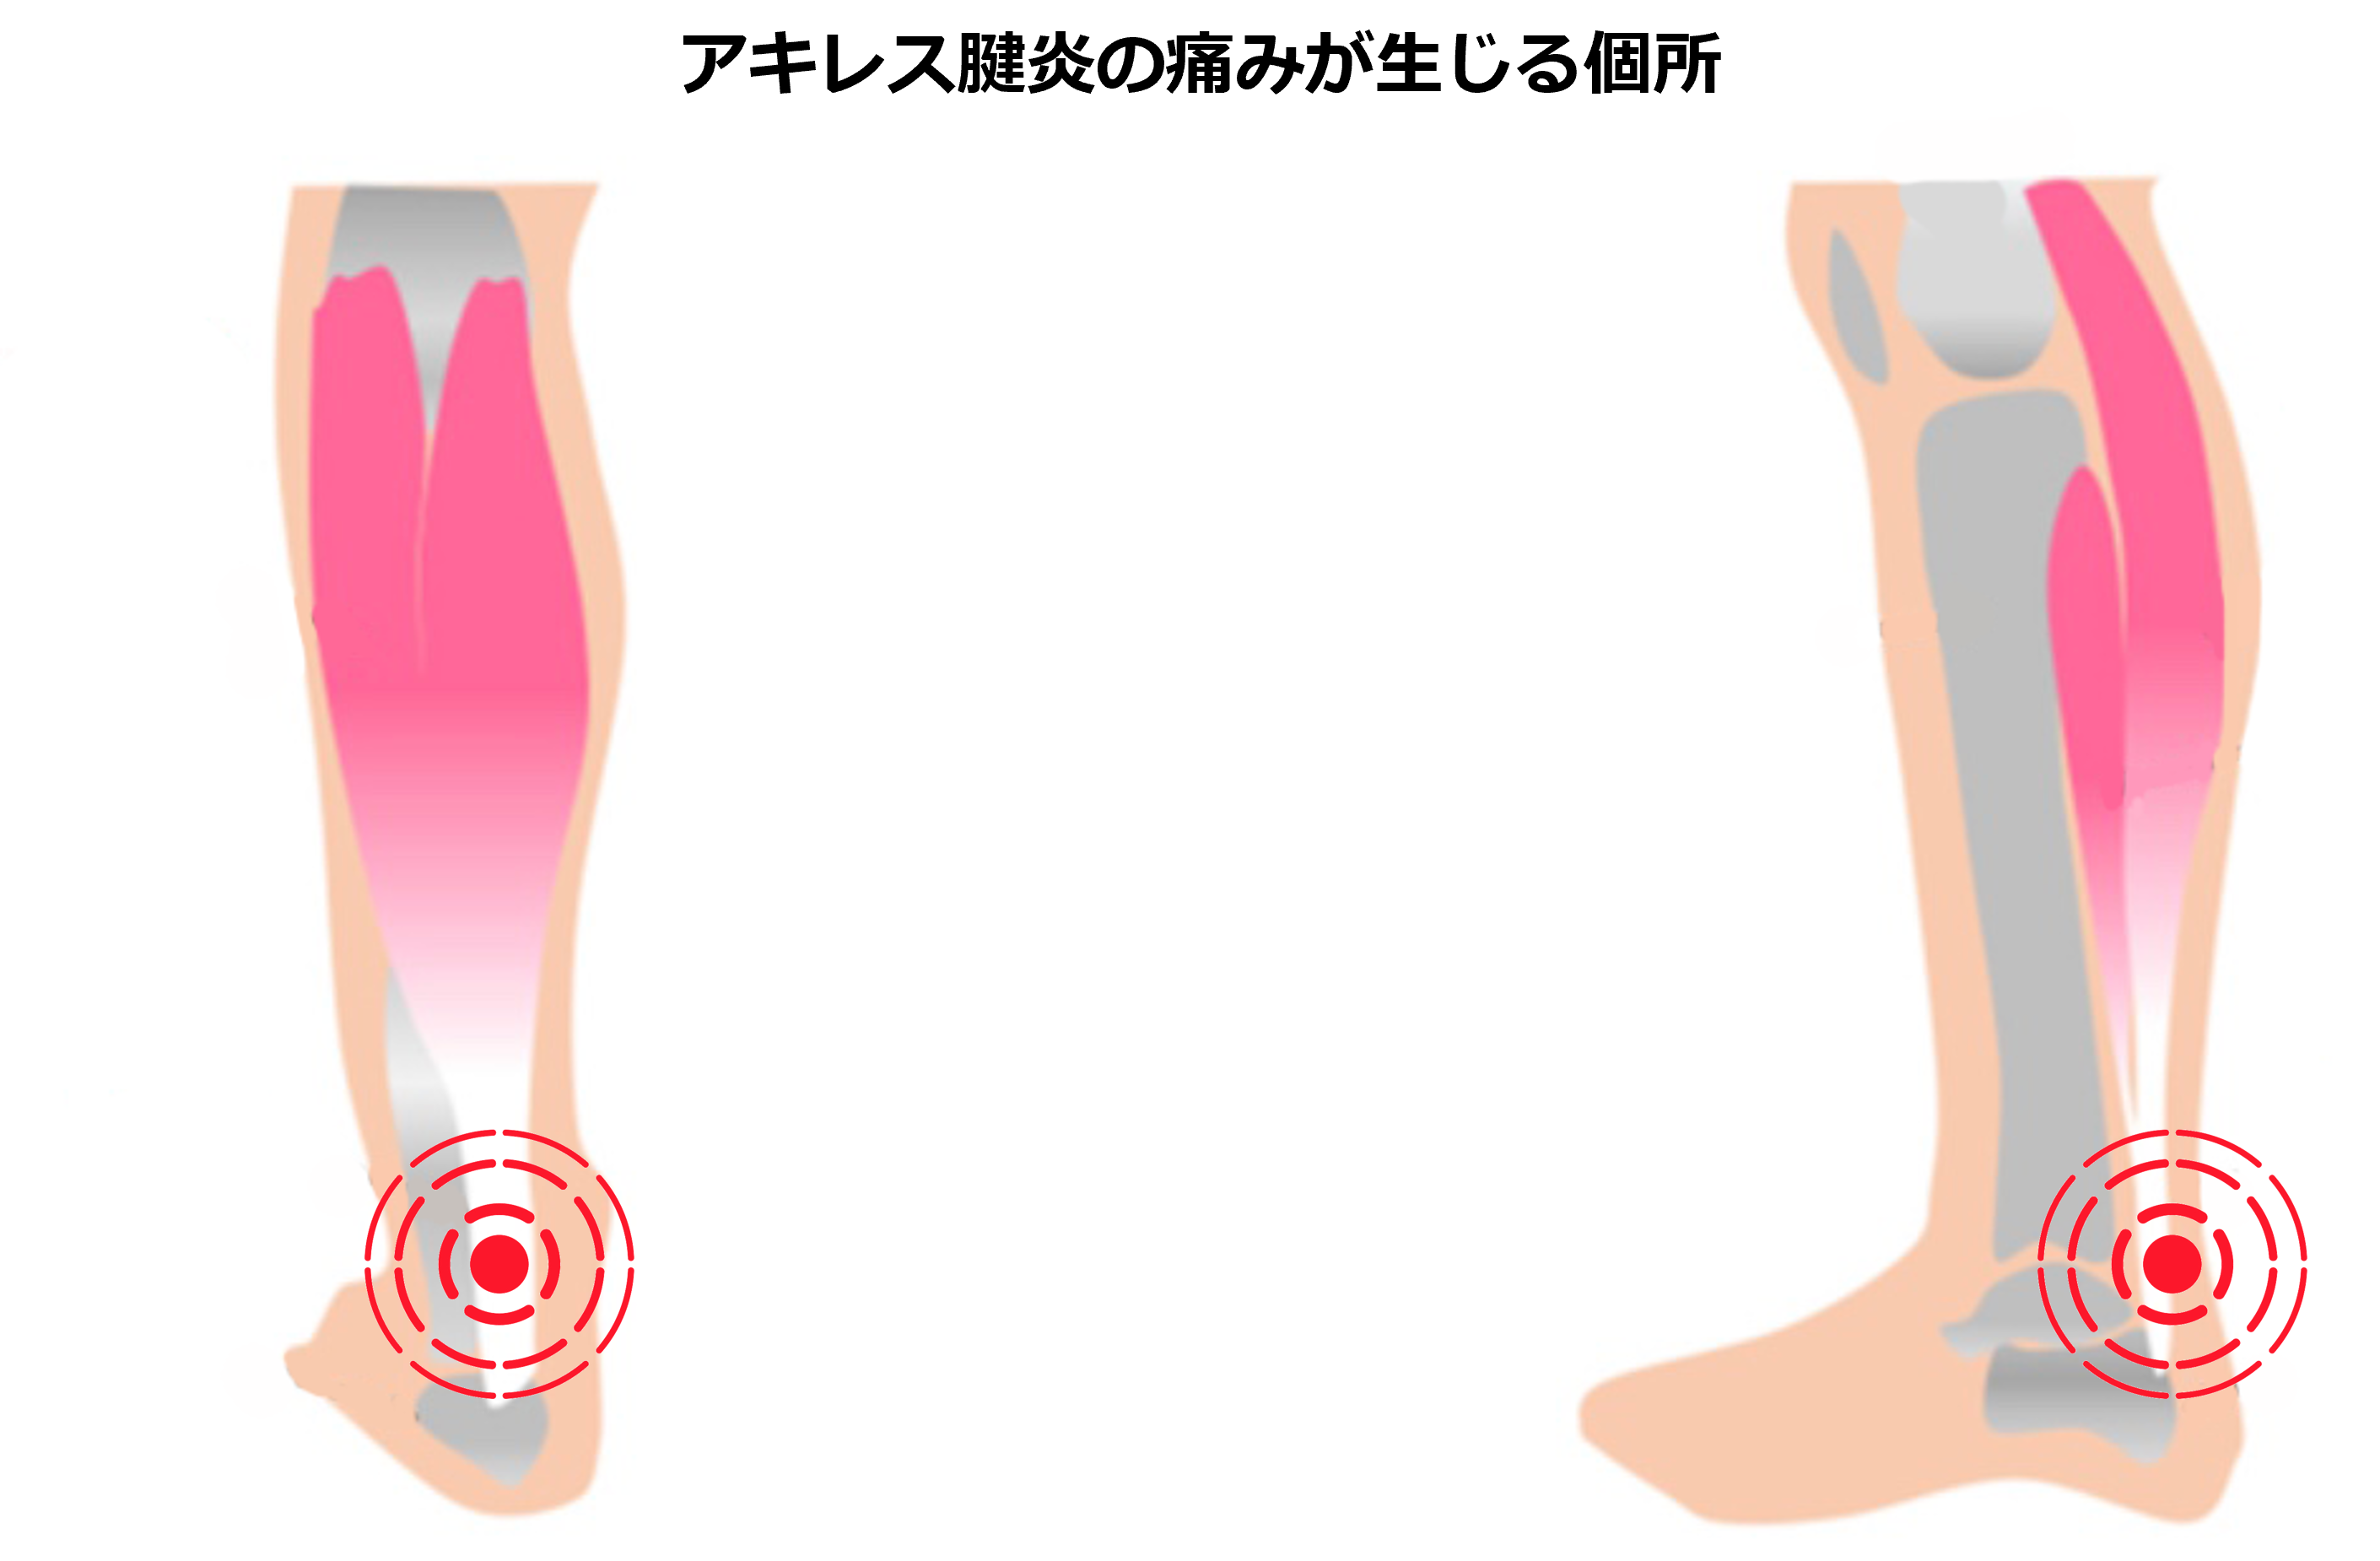 アキレス腱炎の生じる個所は、かかとの後部、アキレス腱のつけね部分です。